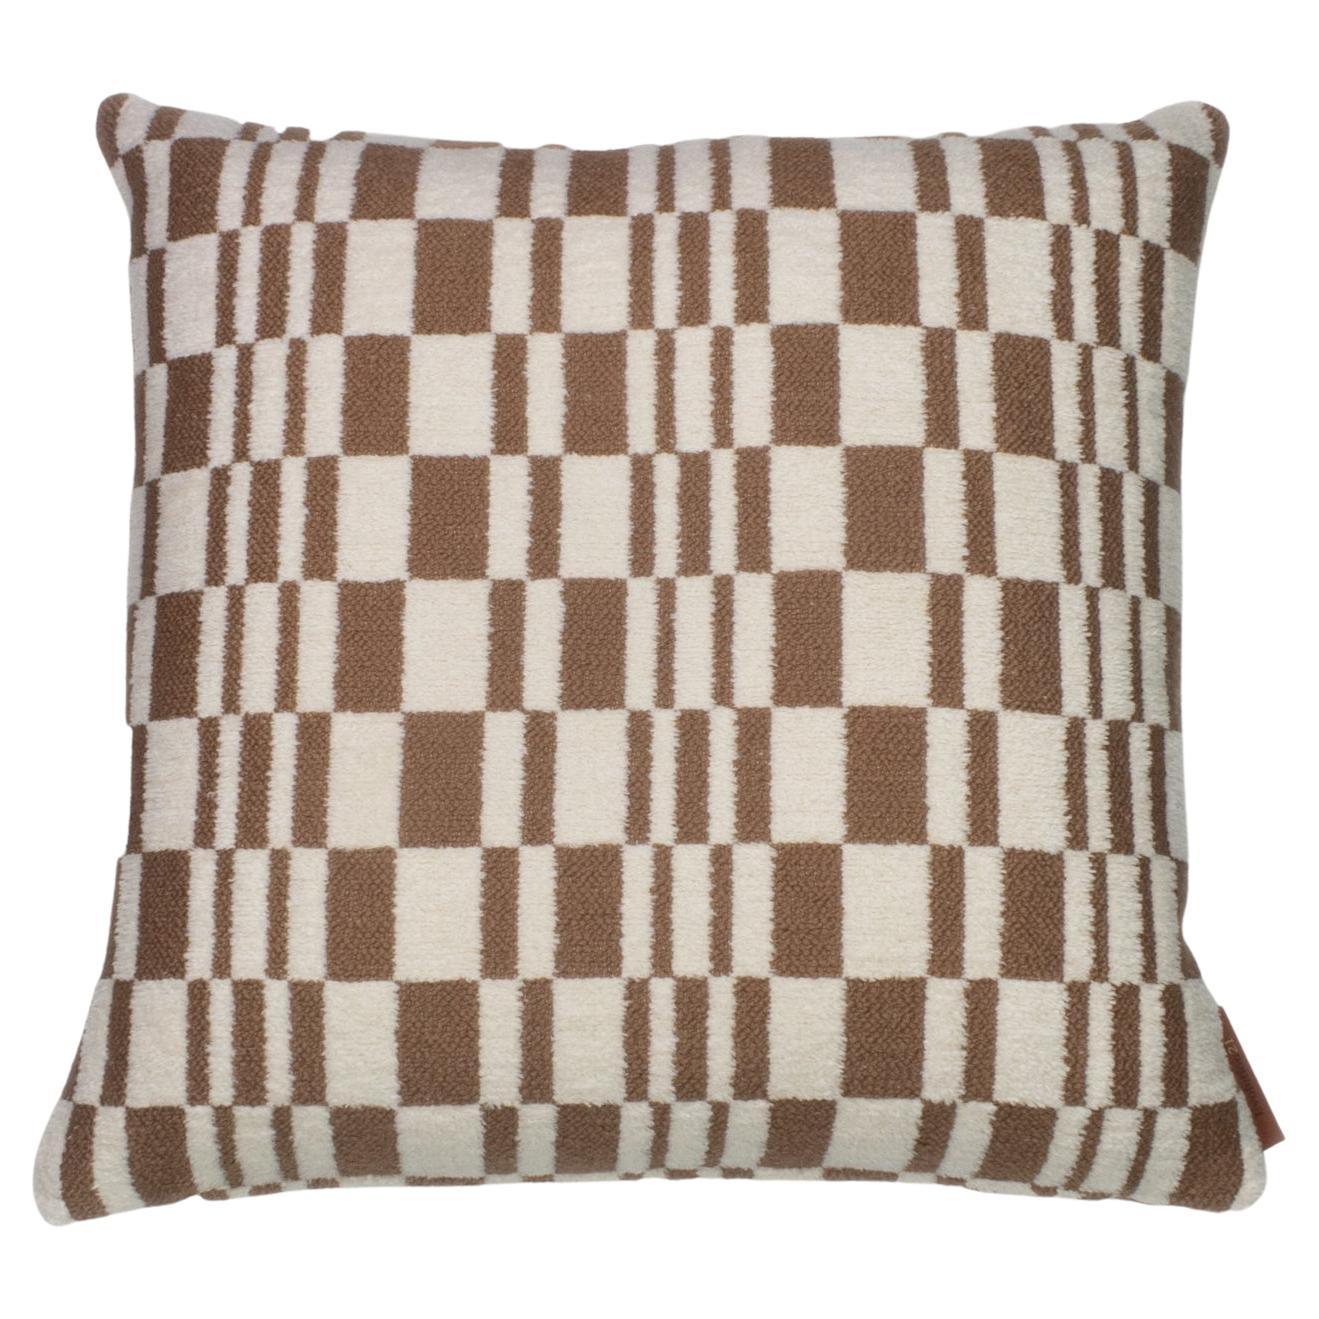 Cushion / Pillow Chess Savannah Brown by Evolution21